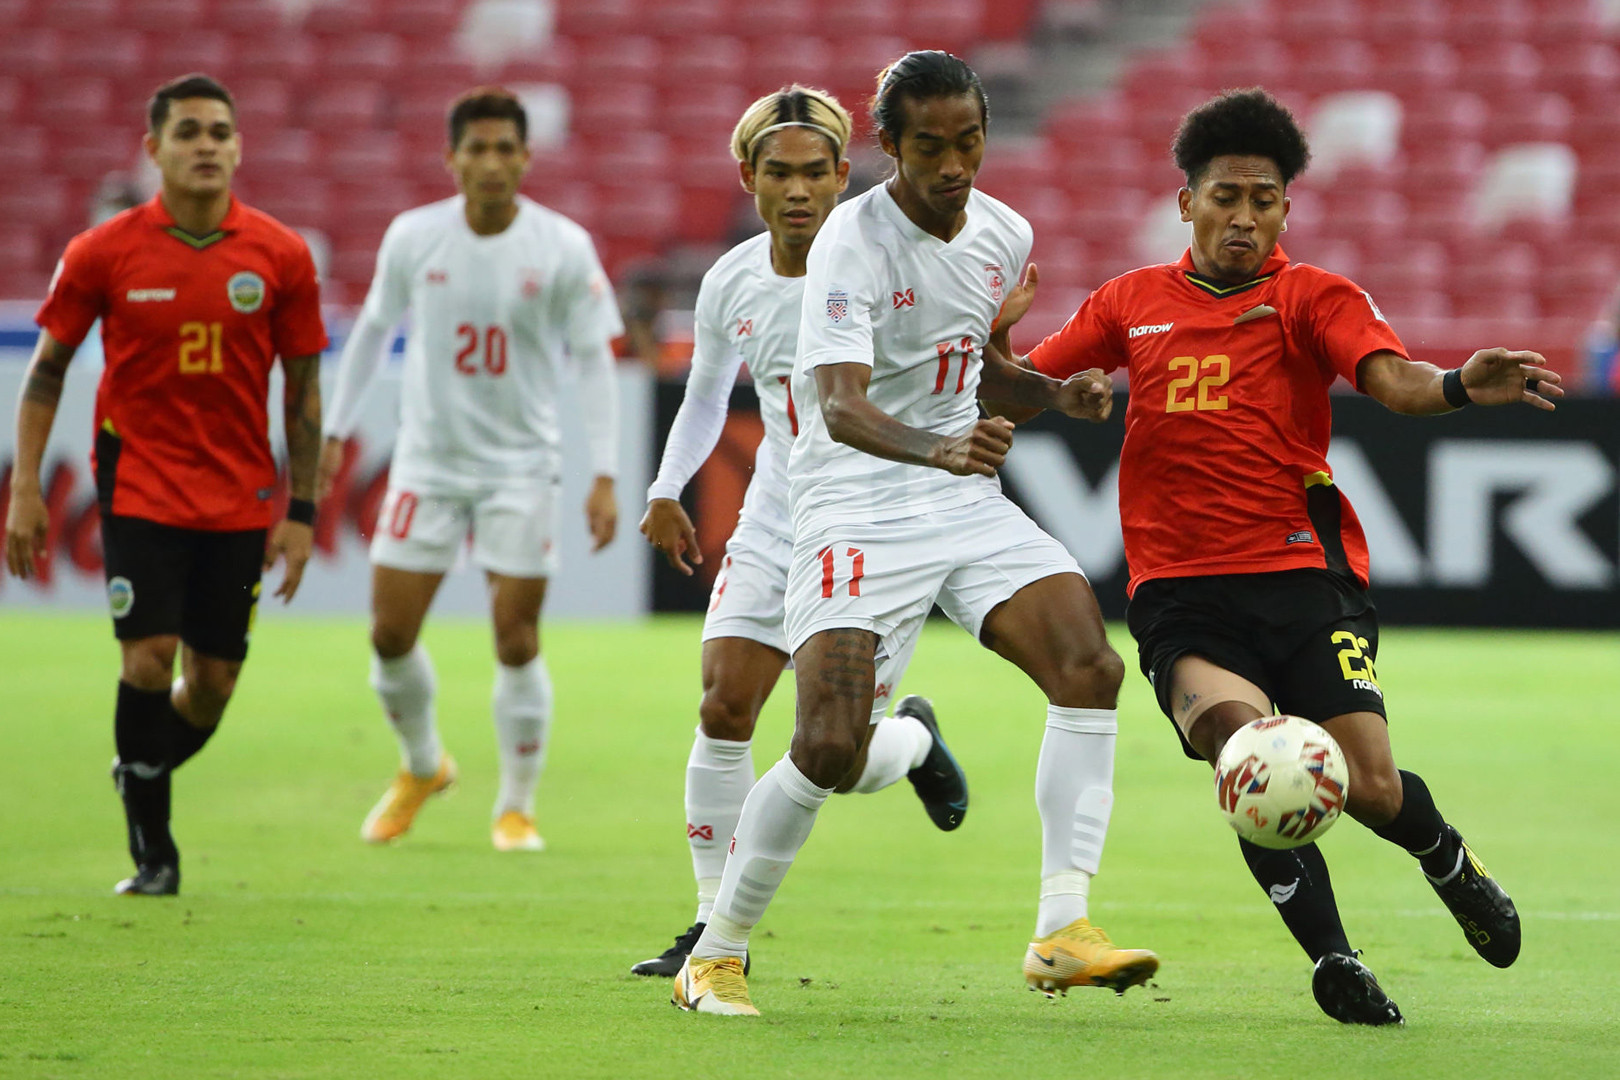 Kết quả bóng đá SEA Games hôm nay: Campuchia gặp khó, đối thủ của U22 Việt Nam tại bán kết lộ diện?